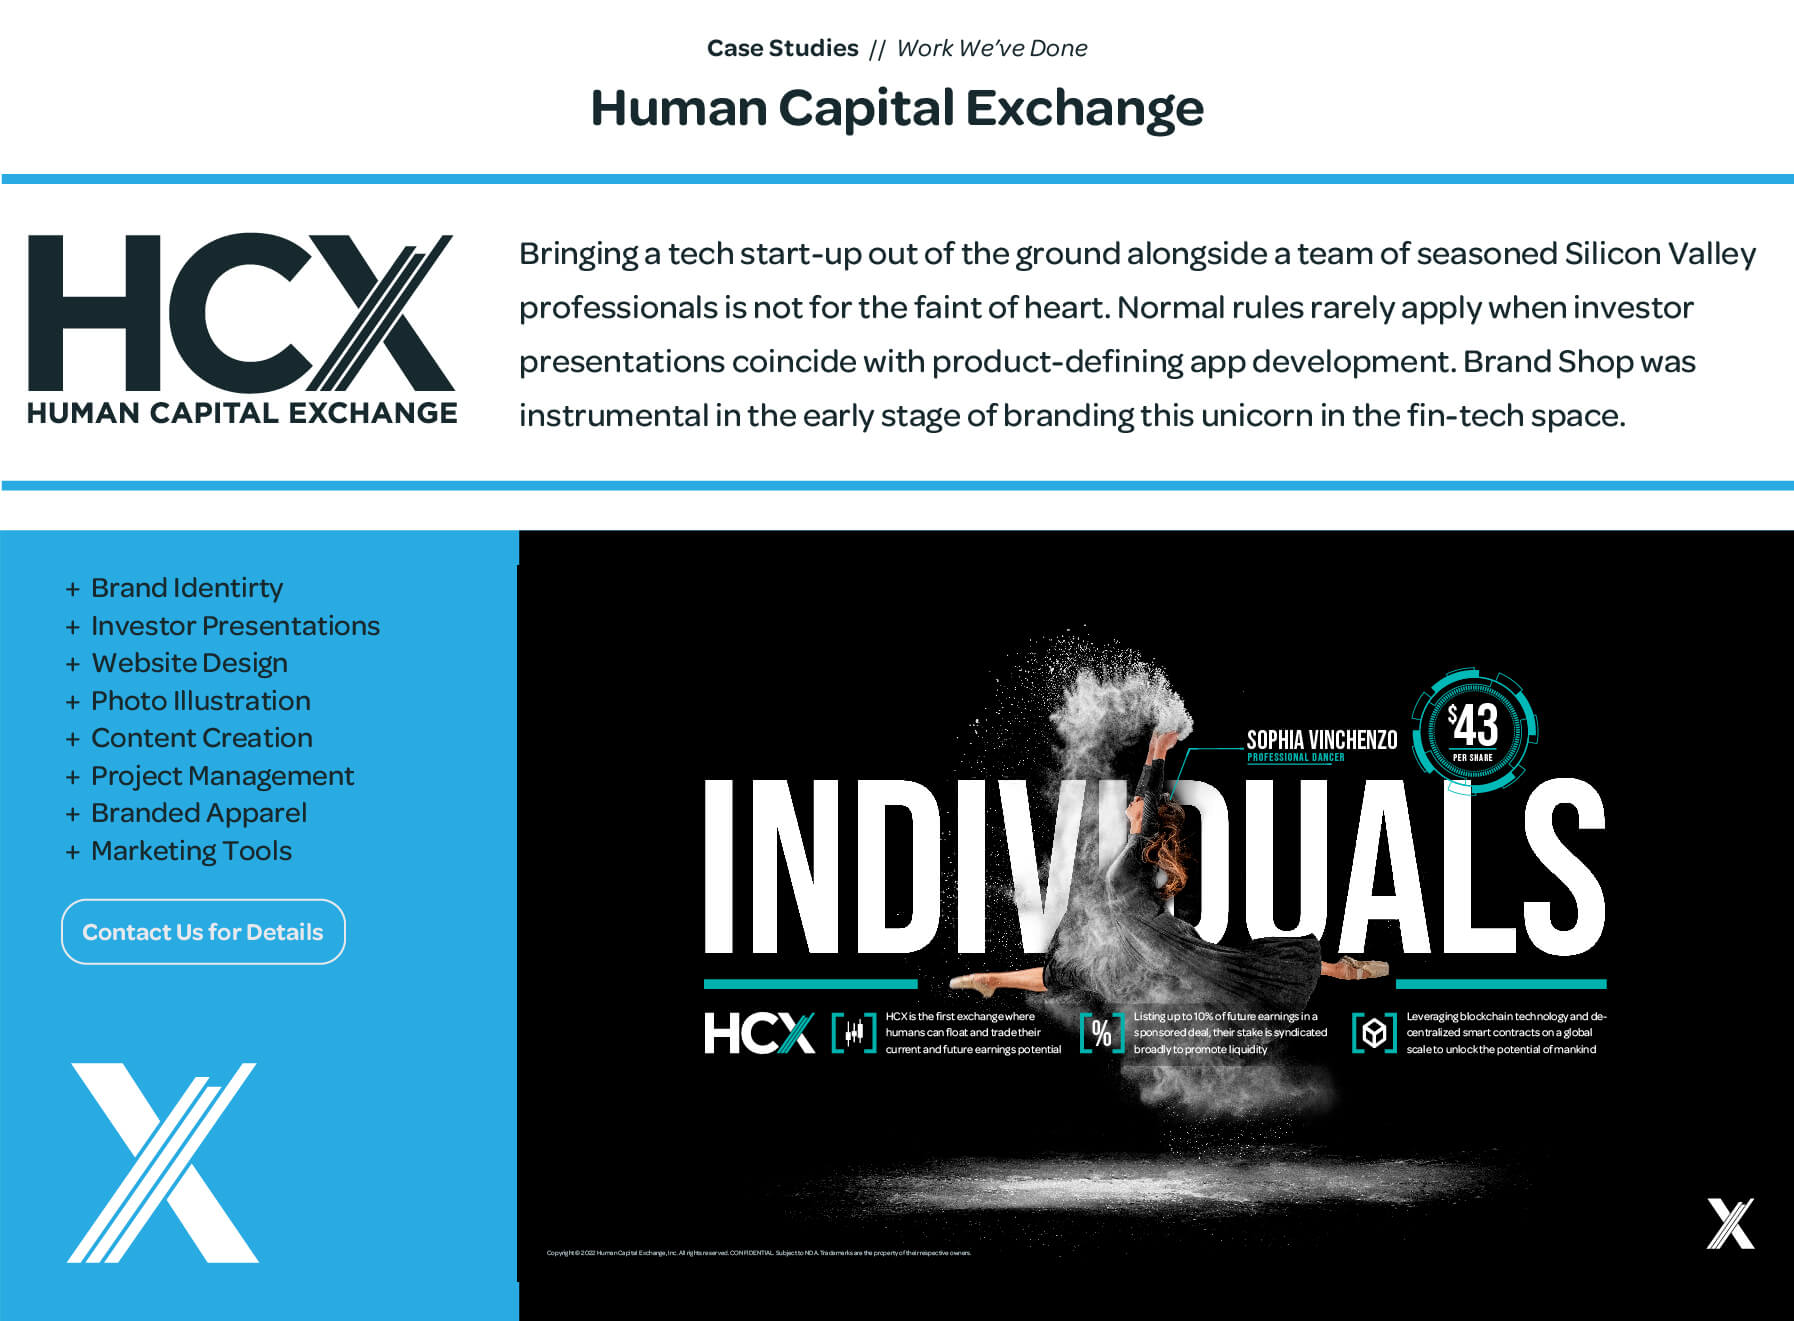 03 - Human Capital Exchange - Case Study